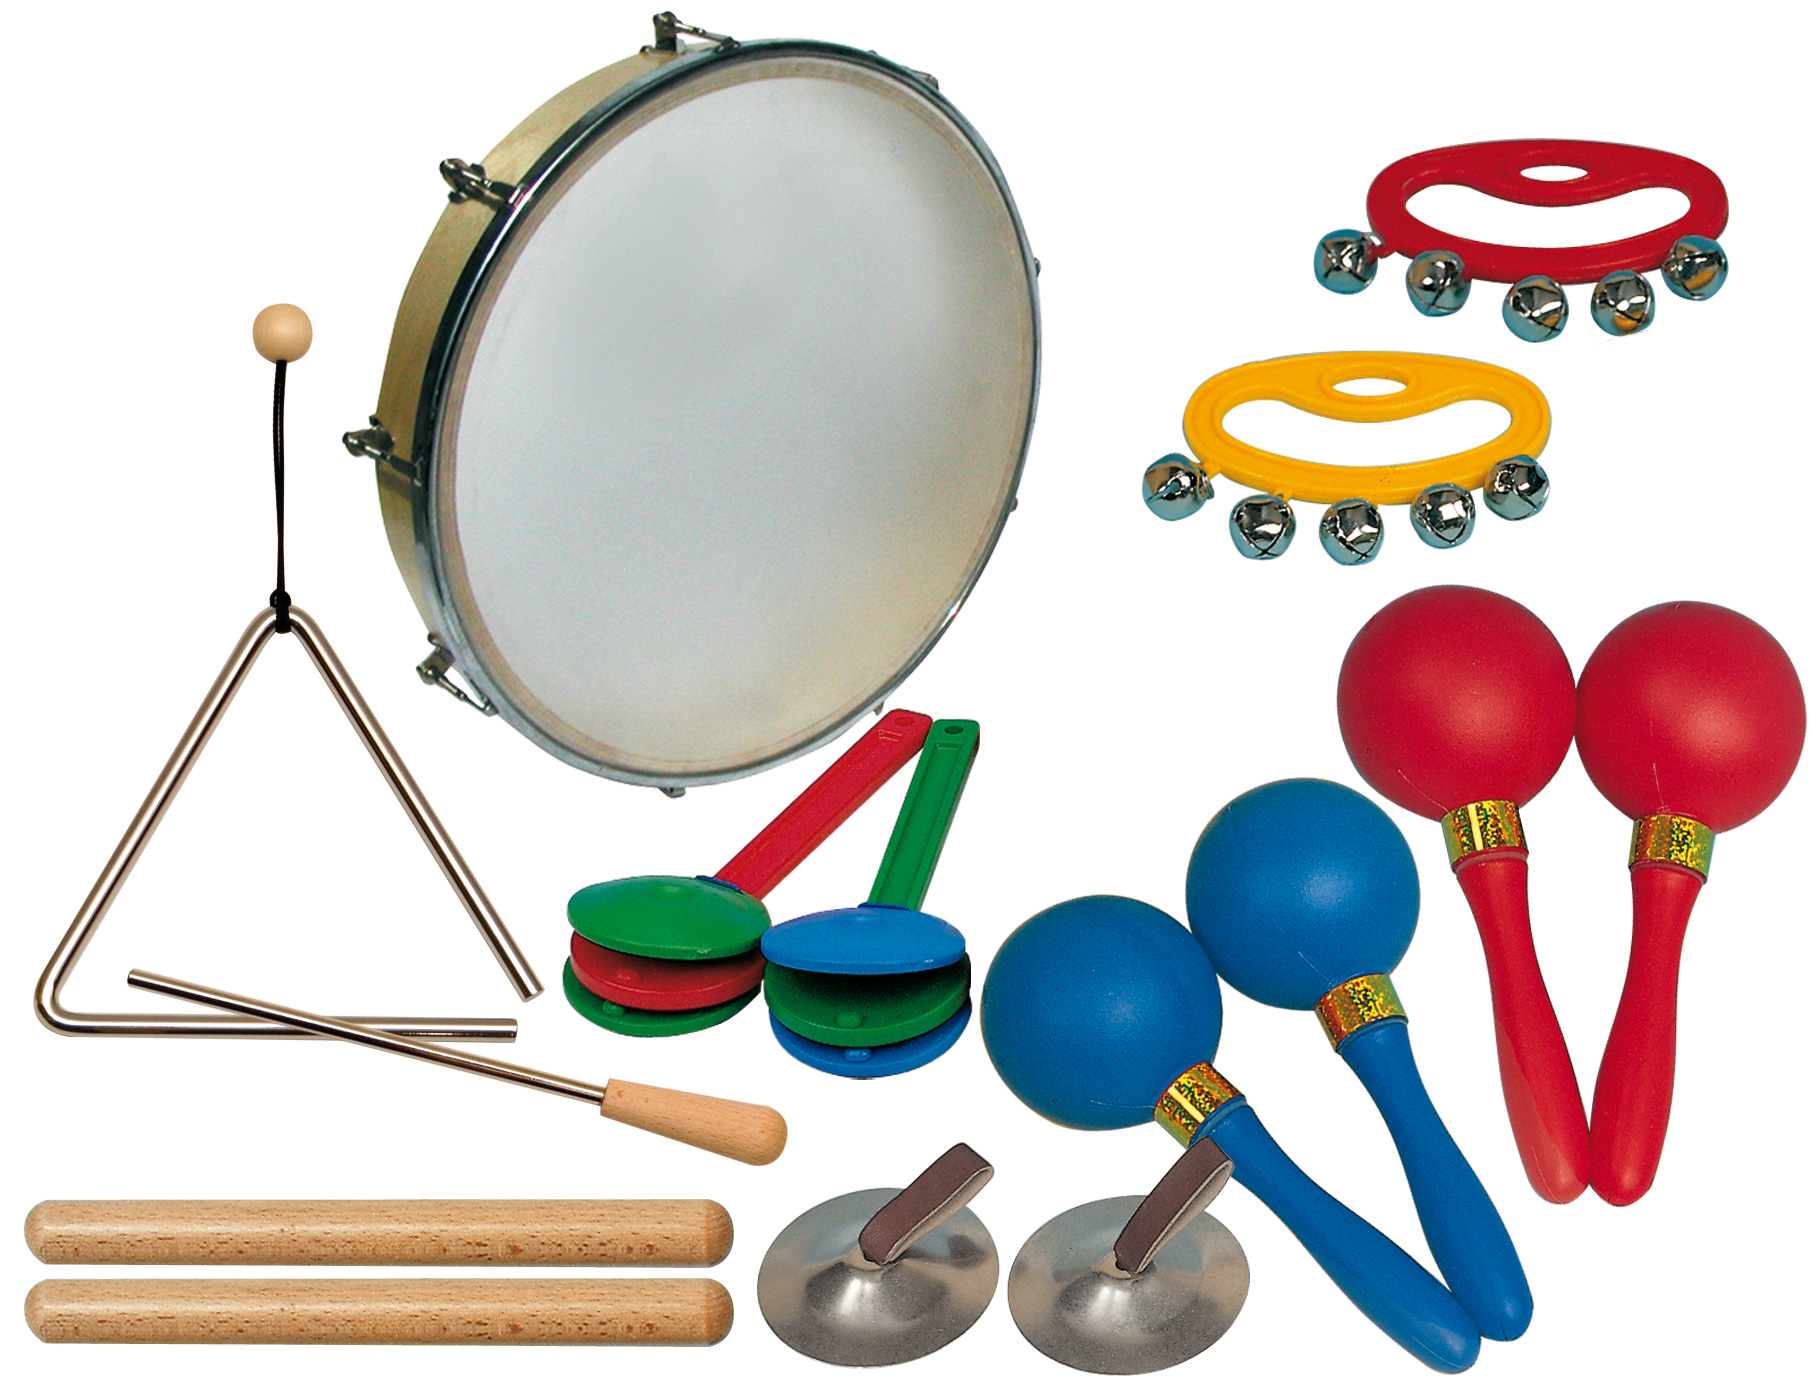 Звучащая игрушка. Шумовые инструменты для детей. Набор музыкальных инструментов для детского сада. Детские музыкальные инструменты для детсада. Музыкальные инструменты в детском саду.